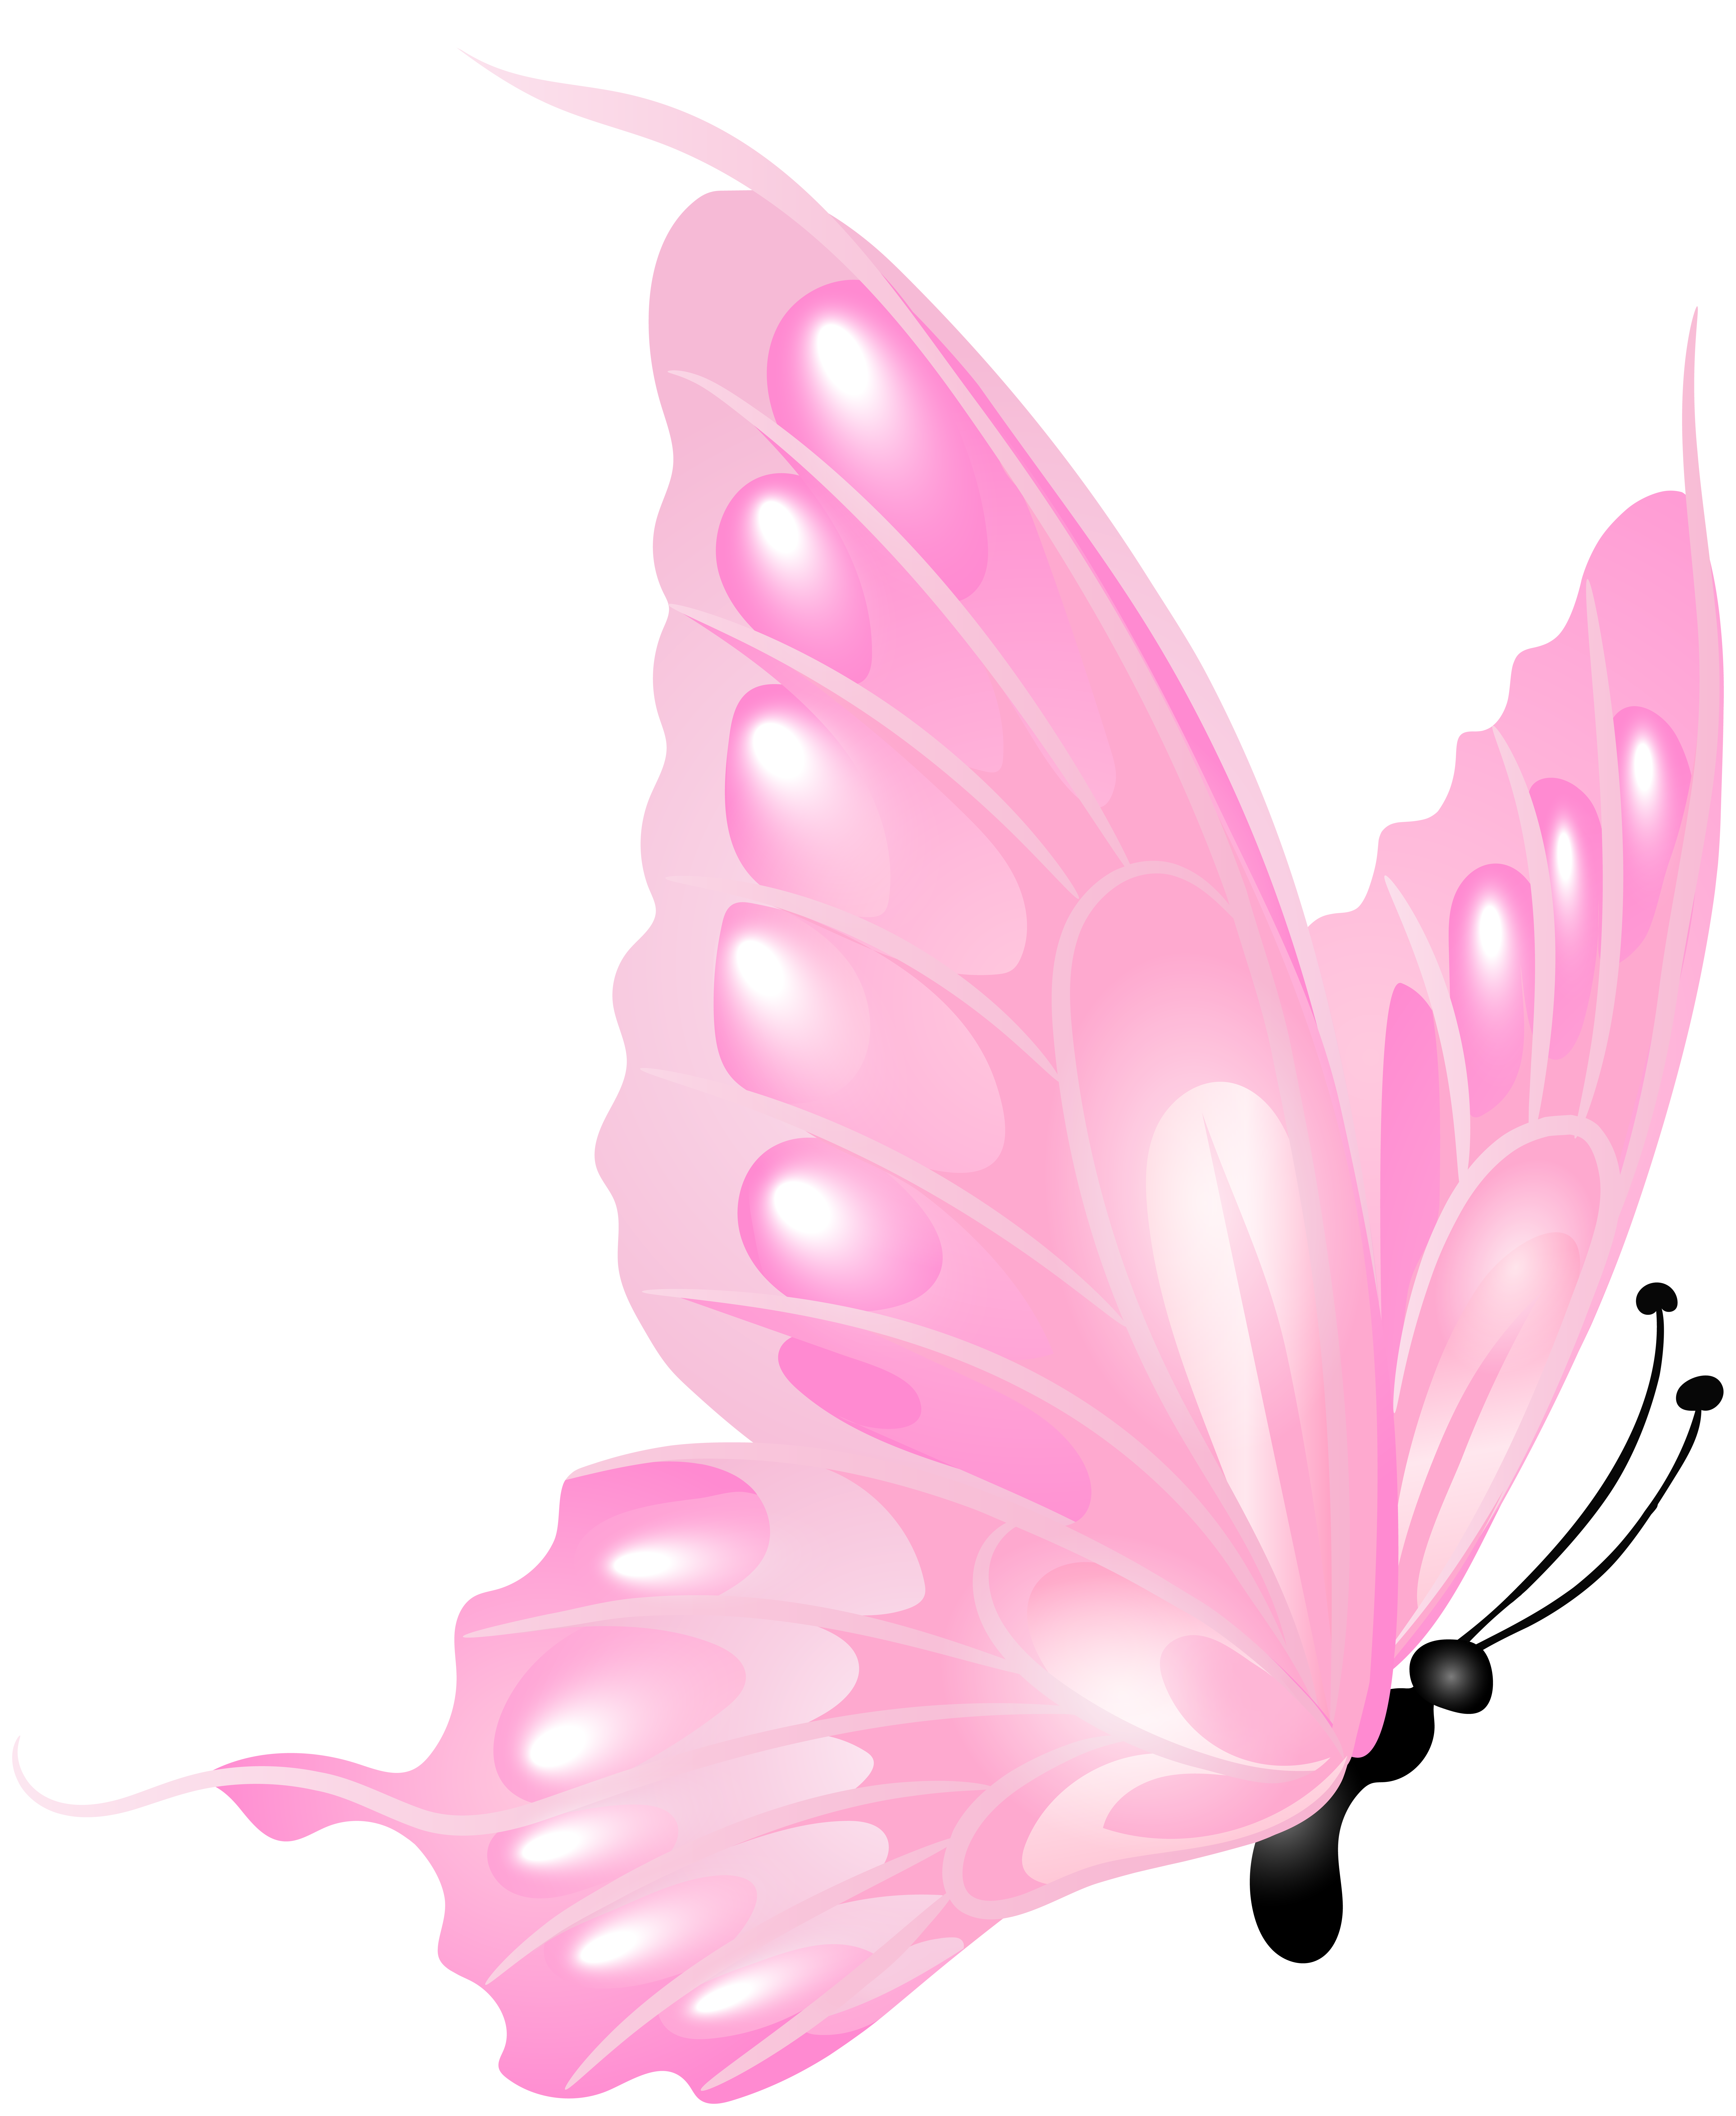 Bạn đang tìm kiếm một hình ảnh đẹp về mẫu bướm hồng trong suốt? Hãy đến với chúng tôi! Chúng tôi hiện có một mẫu bướm hồng trong suốt với nền cũng trong suốt. Hình ảnh này sẽ khiến bạn có những cảm xúc mới lạ về sự đẹp đẽ của thiên nhiên.